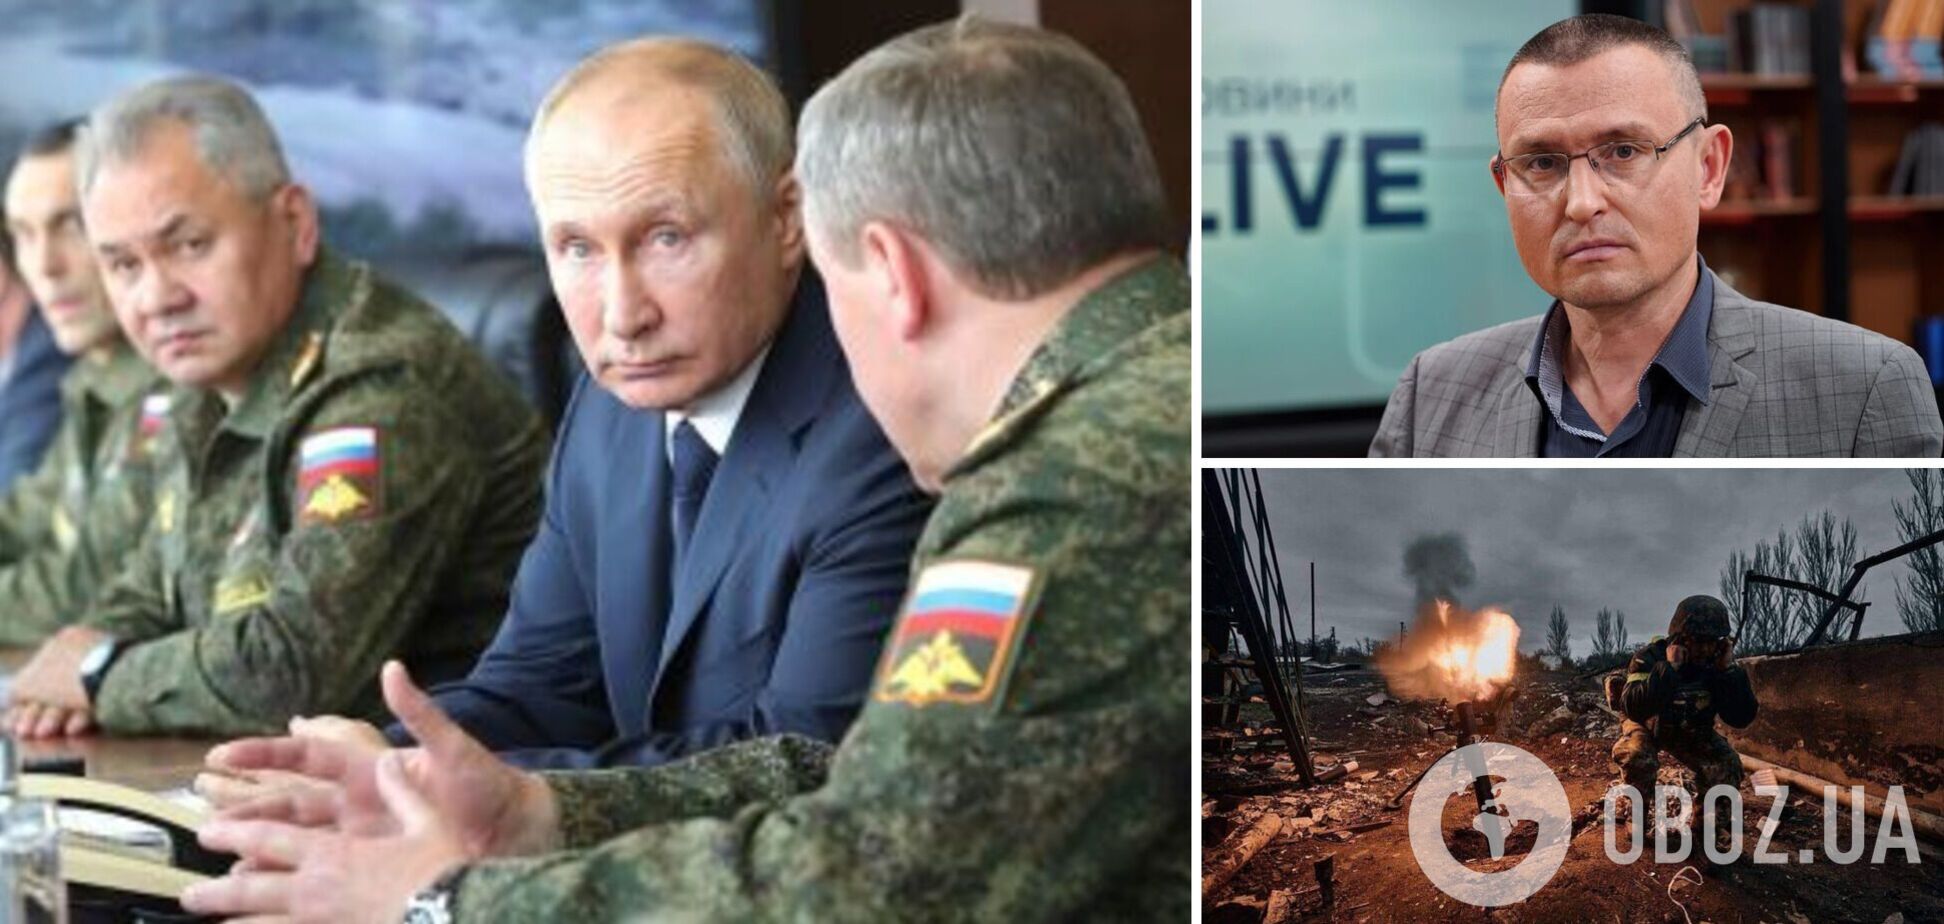 Селезнев: Путин ищет слабые места в украинской обороне, но наступать пока не способен. Интервью